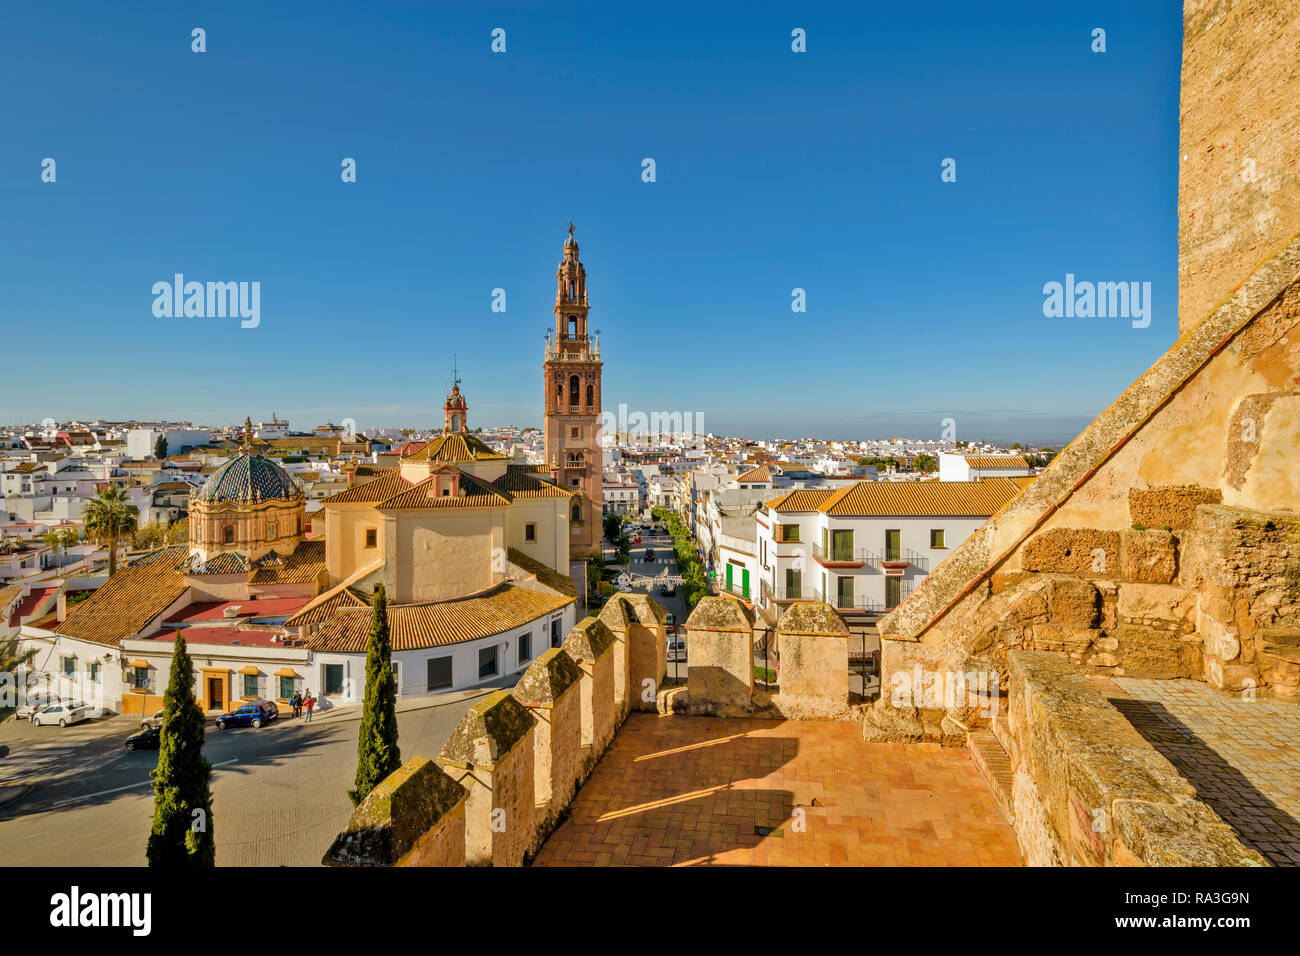 CARMONA Spagna Una vista dalla fortezza della porta di Siviglia sulla città e il campanile di una chiesa simile alla Giralda torre campanaria Foto Stock